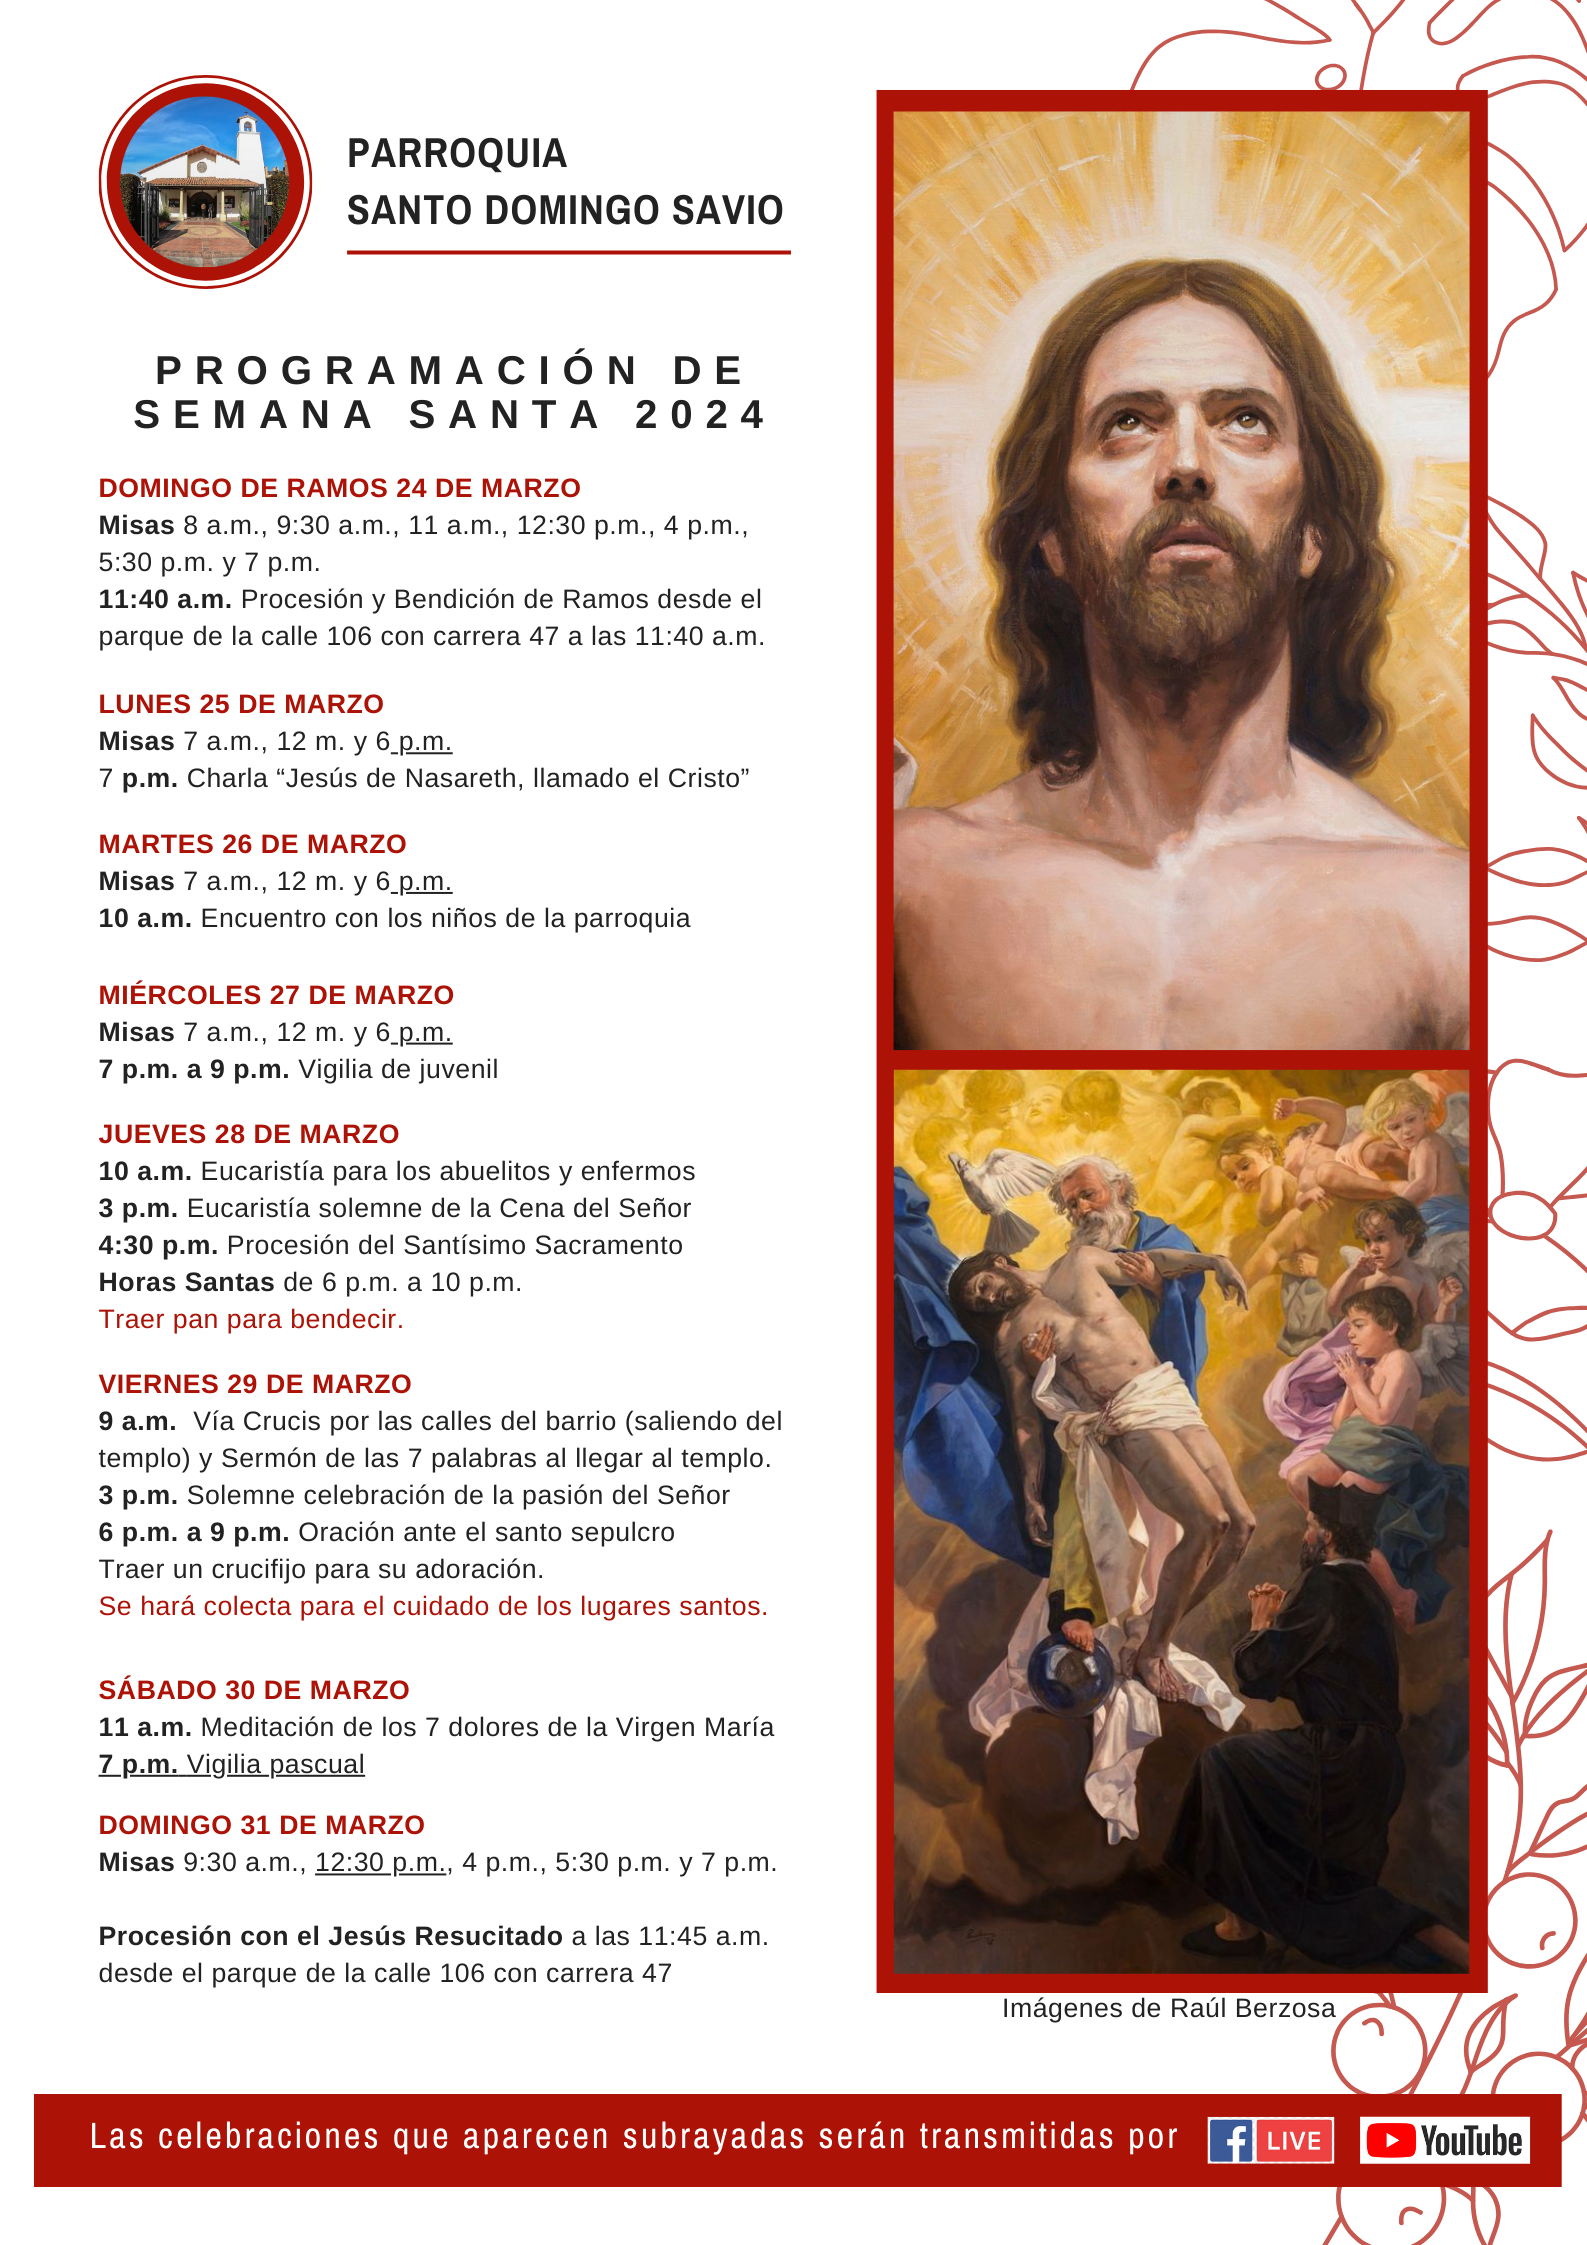 Programación de Semana Santa 2014 Santo Domingo Savio